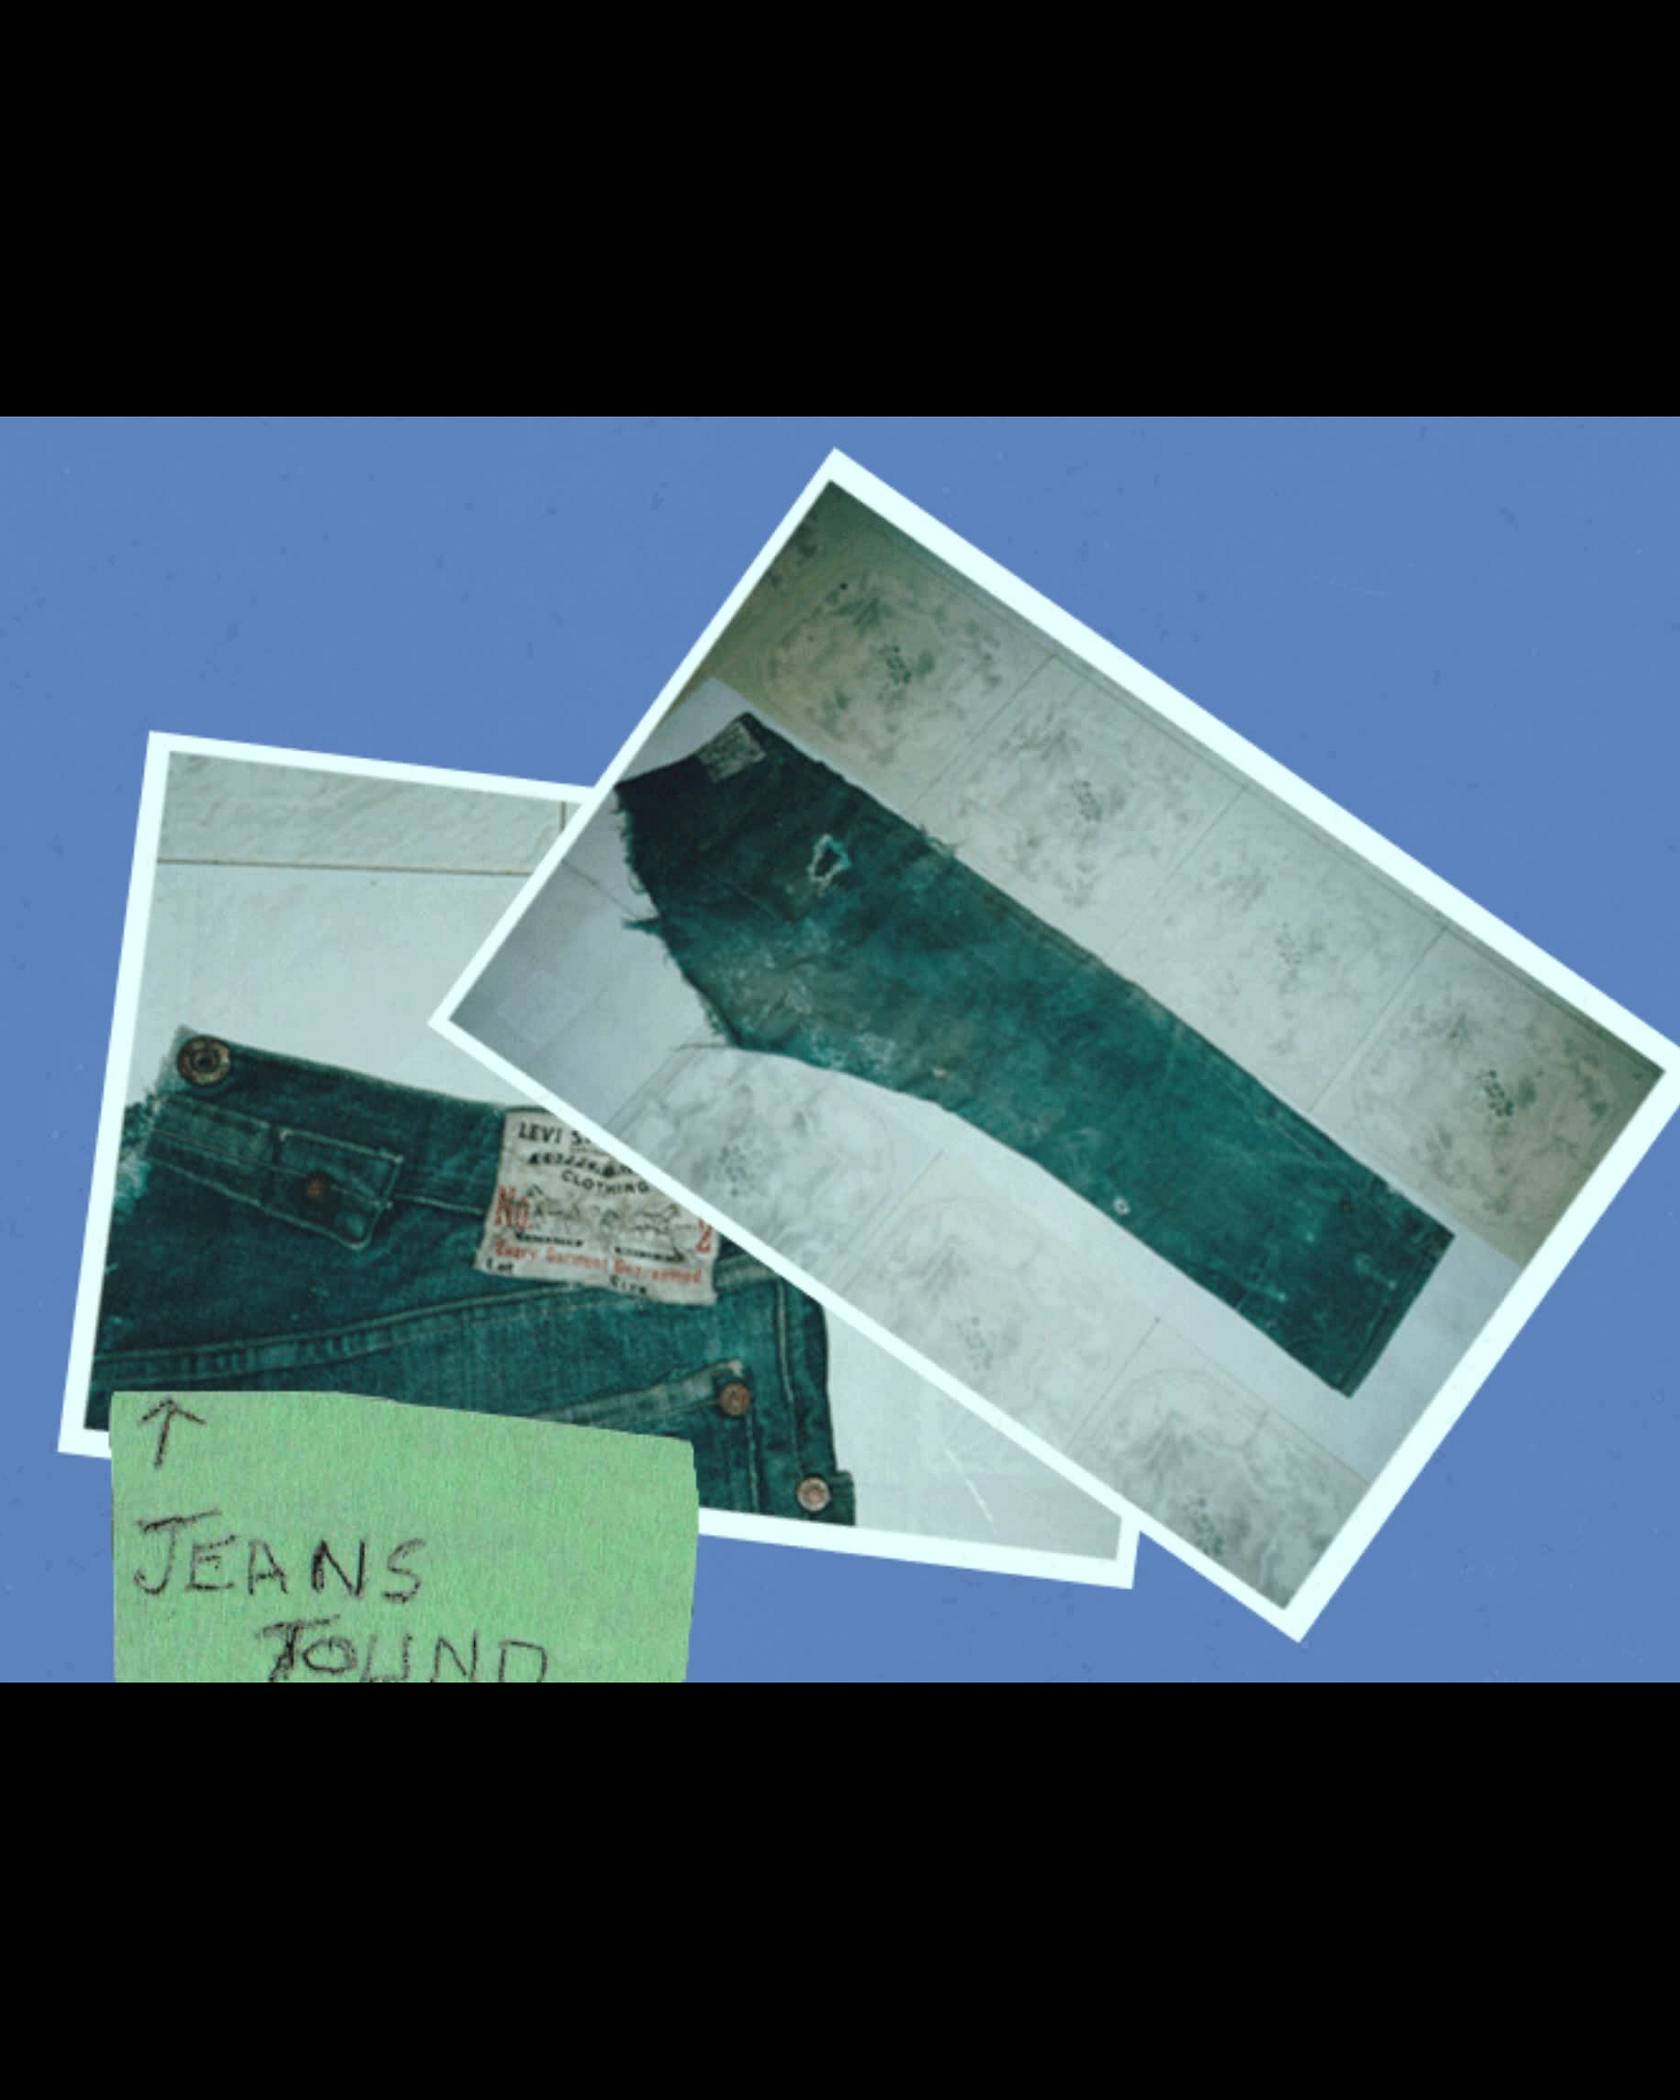 Two polaroids of jeans